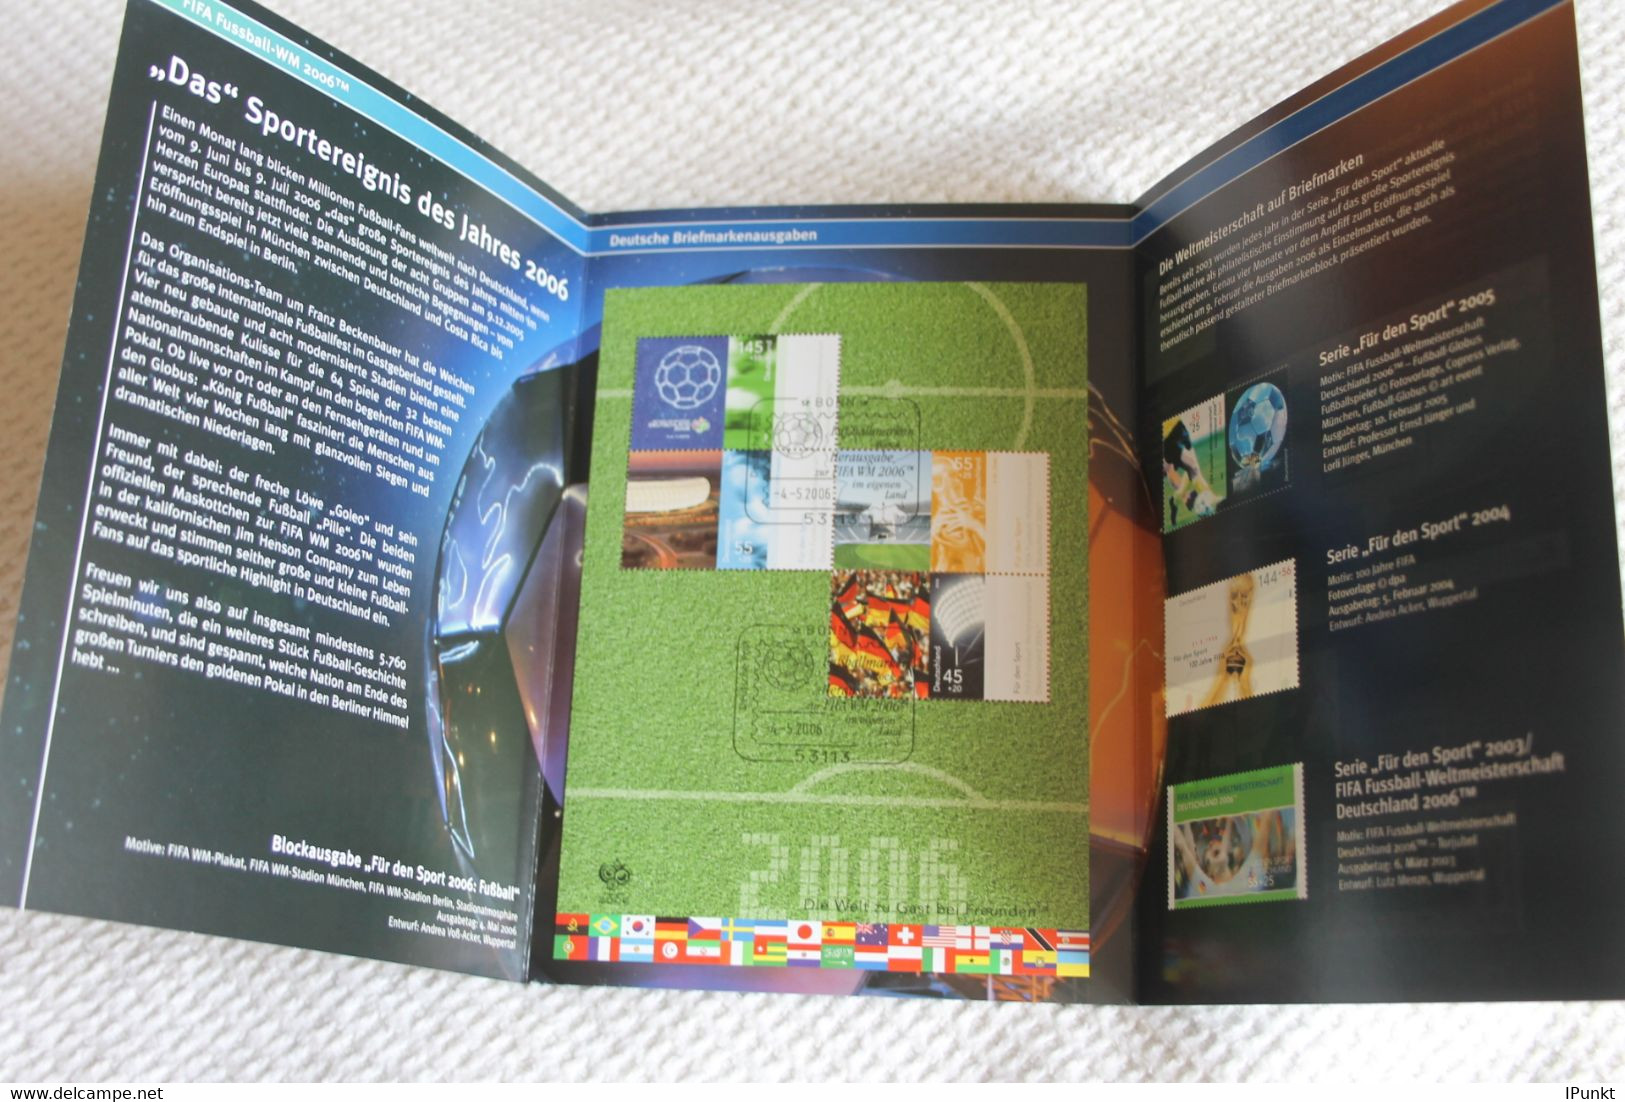 Fußball-Weltmeisterschaft In Deutschland 2006; Gedenkblatt Der Deutsche Post 2006 - Holograms